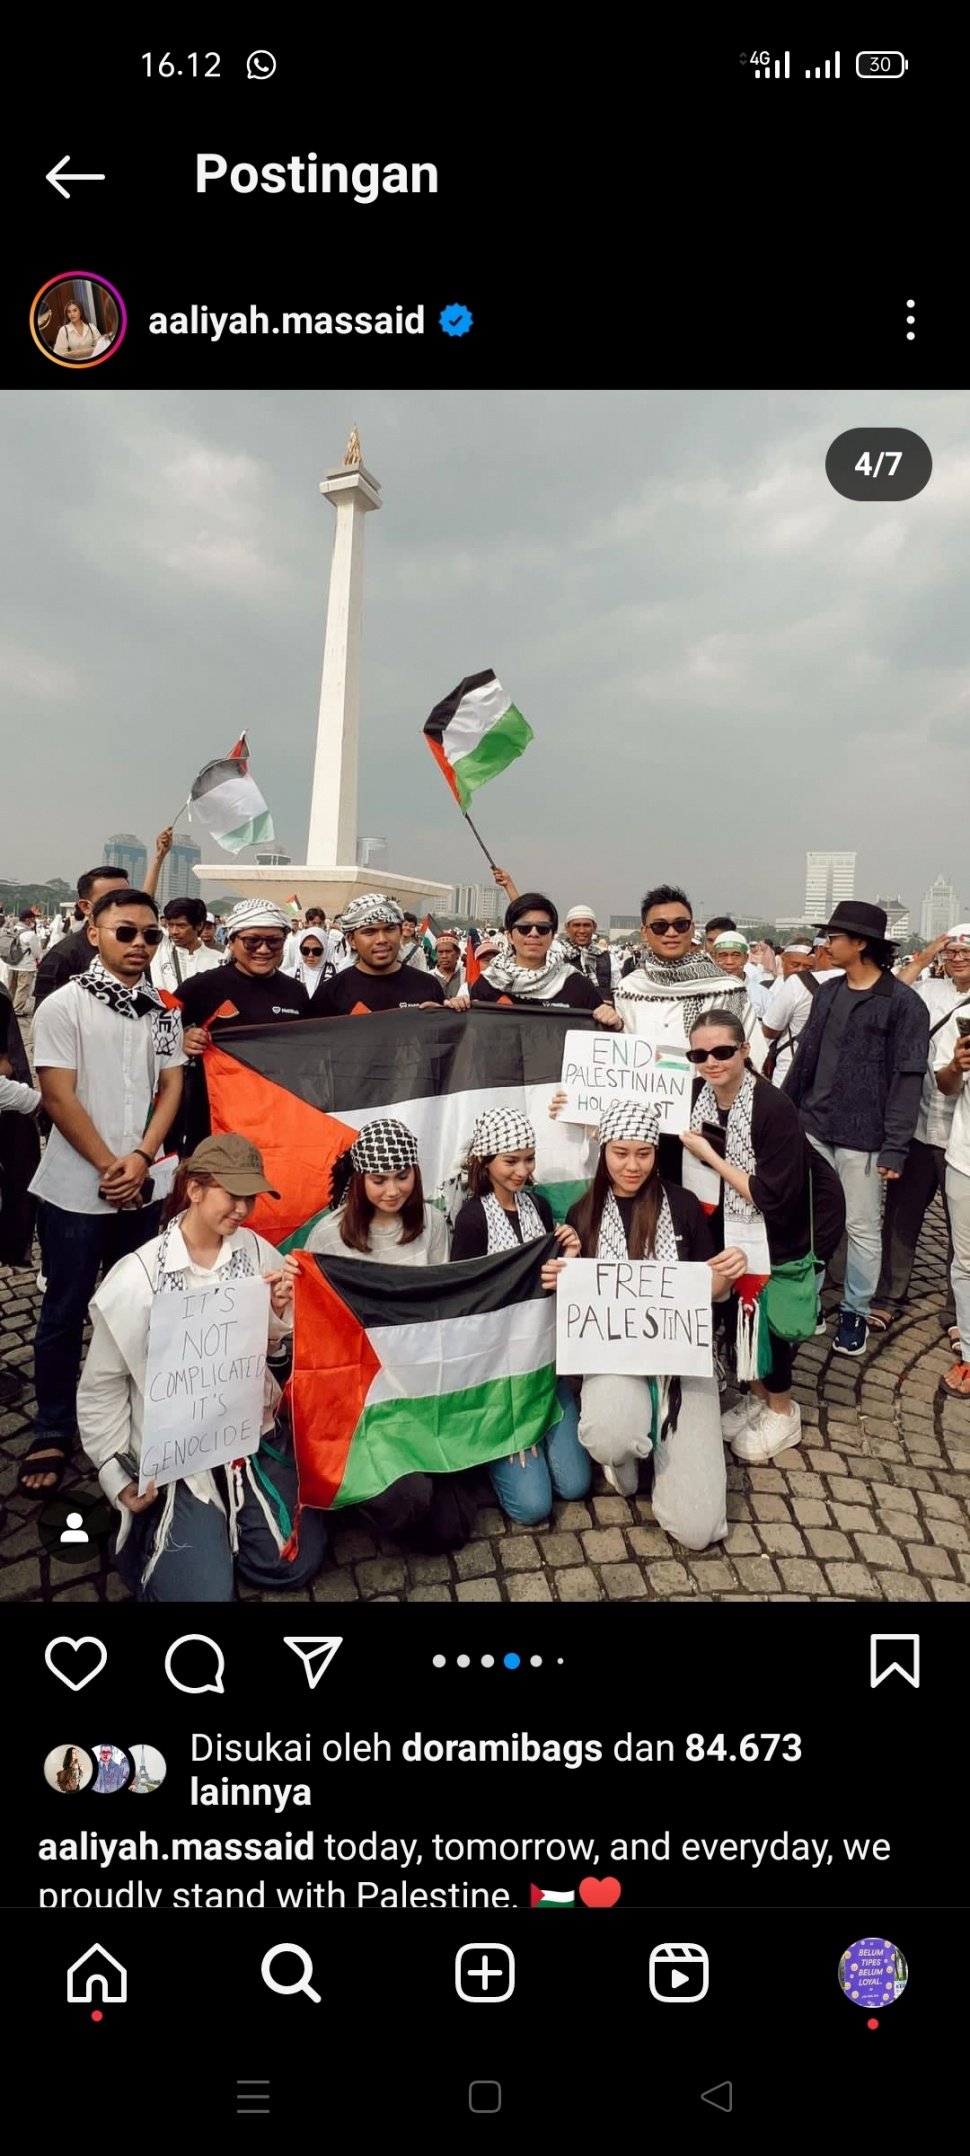 Aaliyah Massaid saat ikut aksi bela Palestina (Instagram/@aaliyah.massaid)